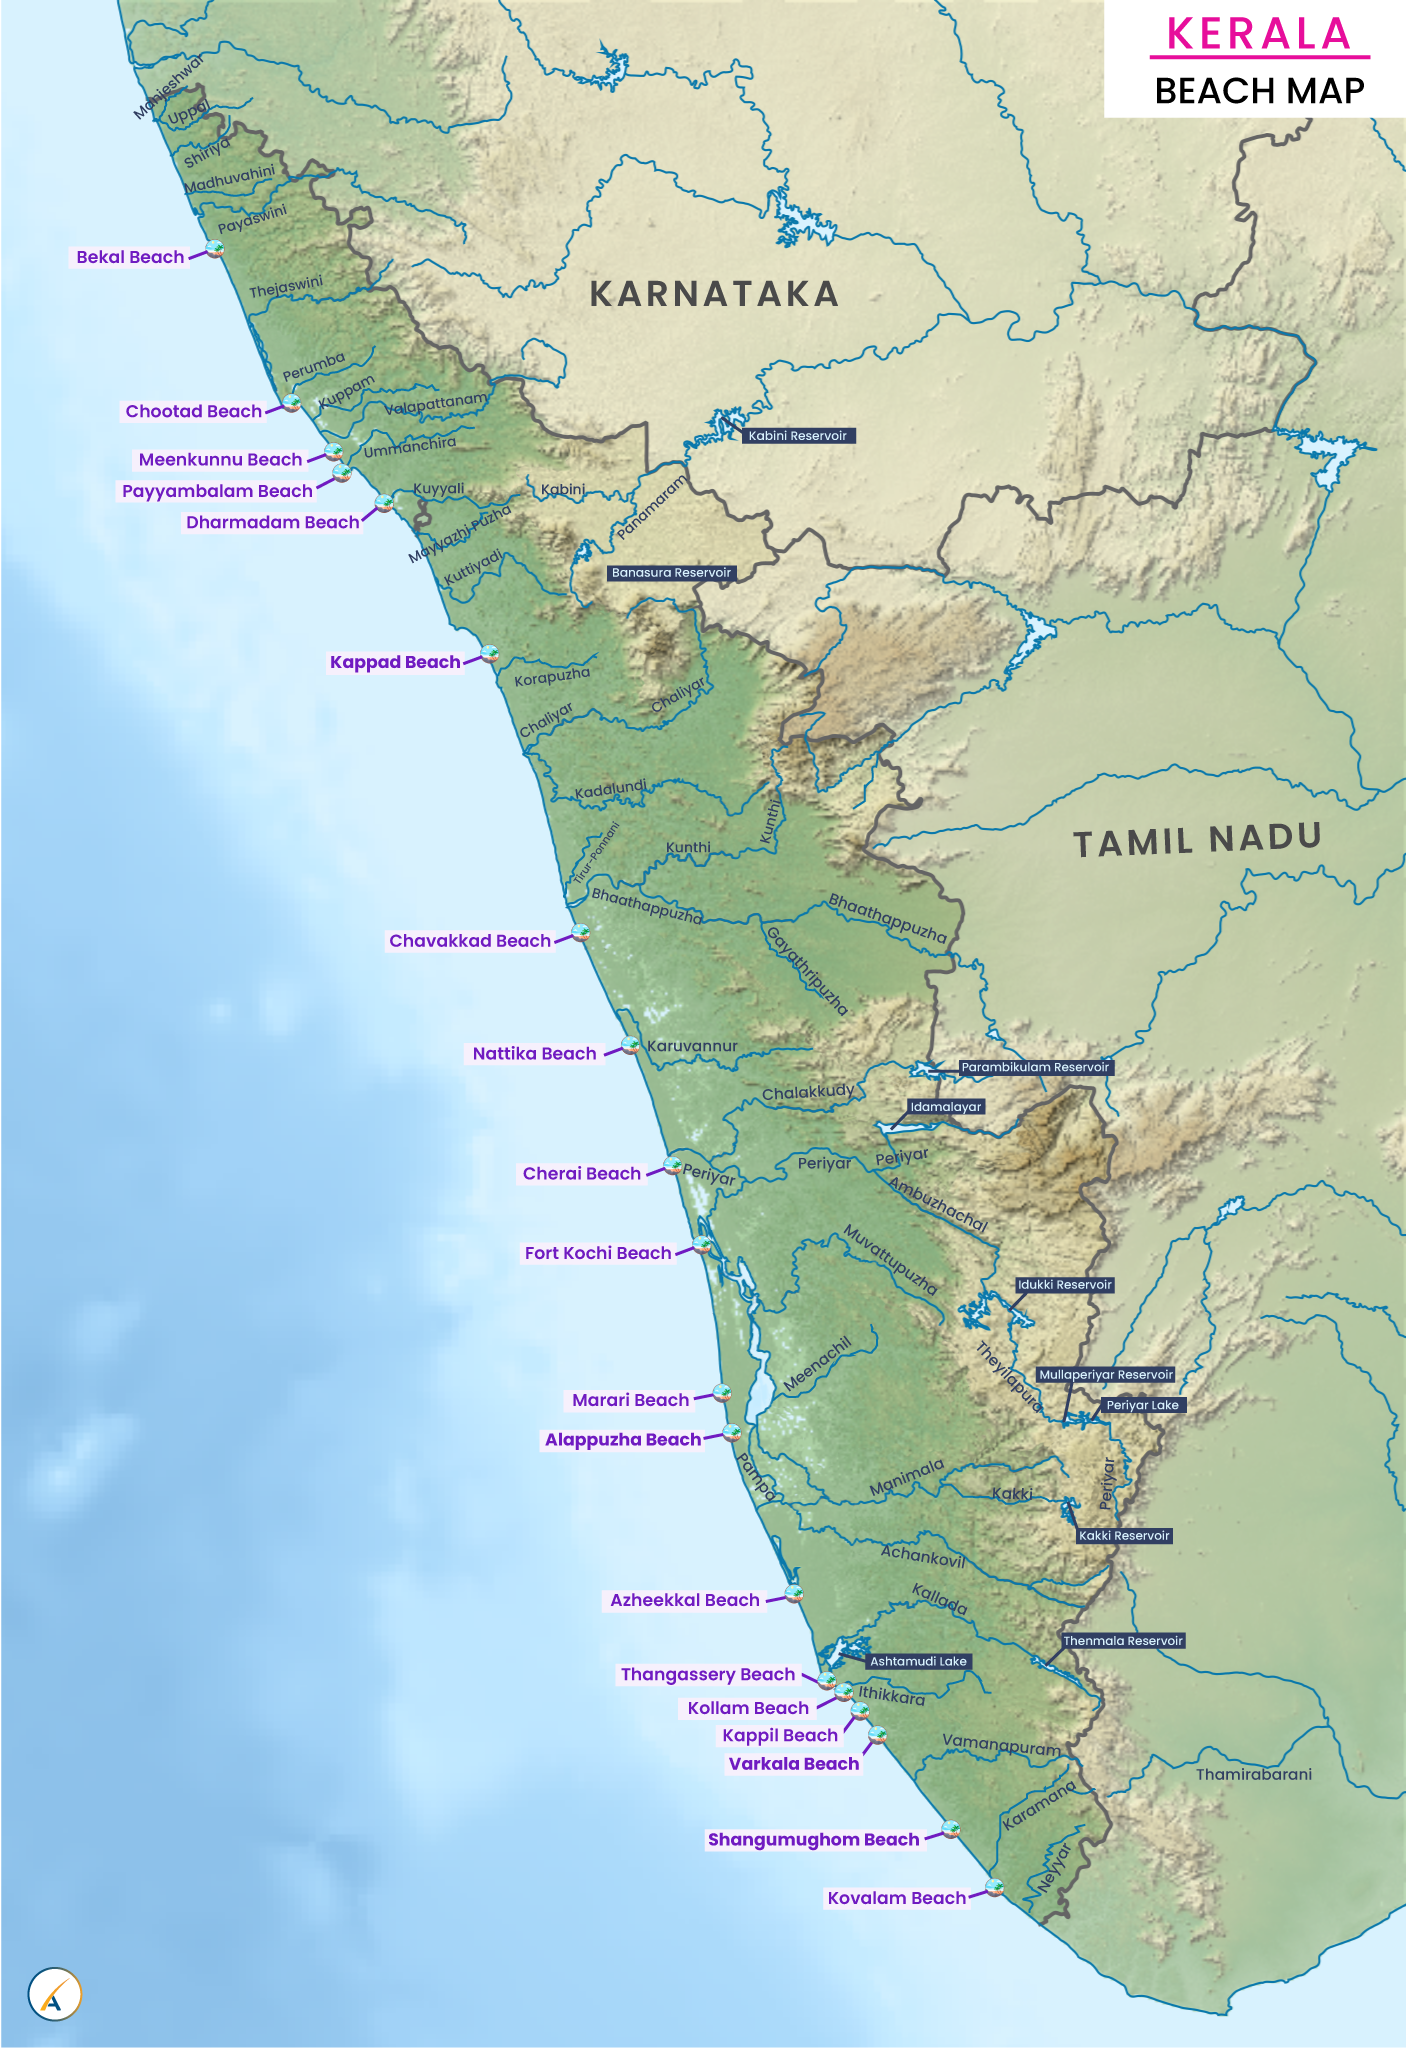 Kerala Beach Map